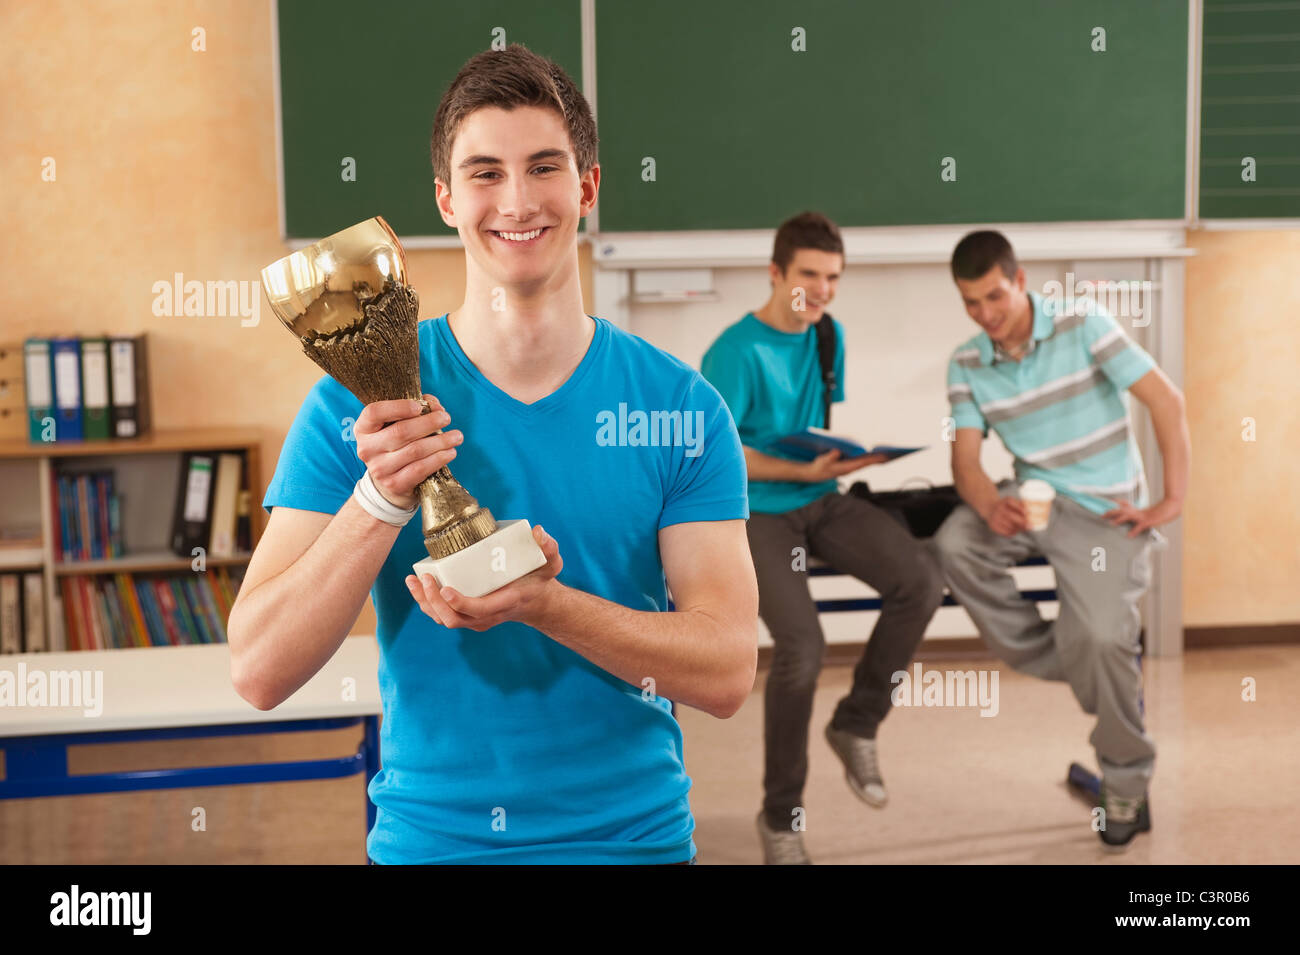 Deutschland, Emmering, jungen Mann, der Trophy zusammen mit Studenten im Hintergrund hält Stockfoto